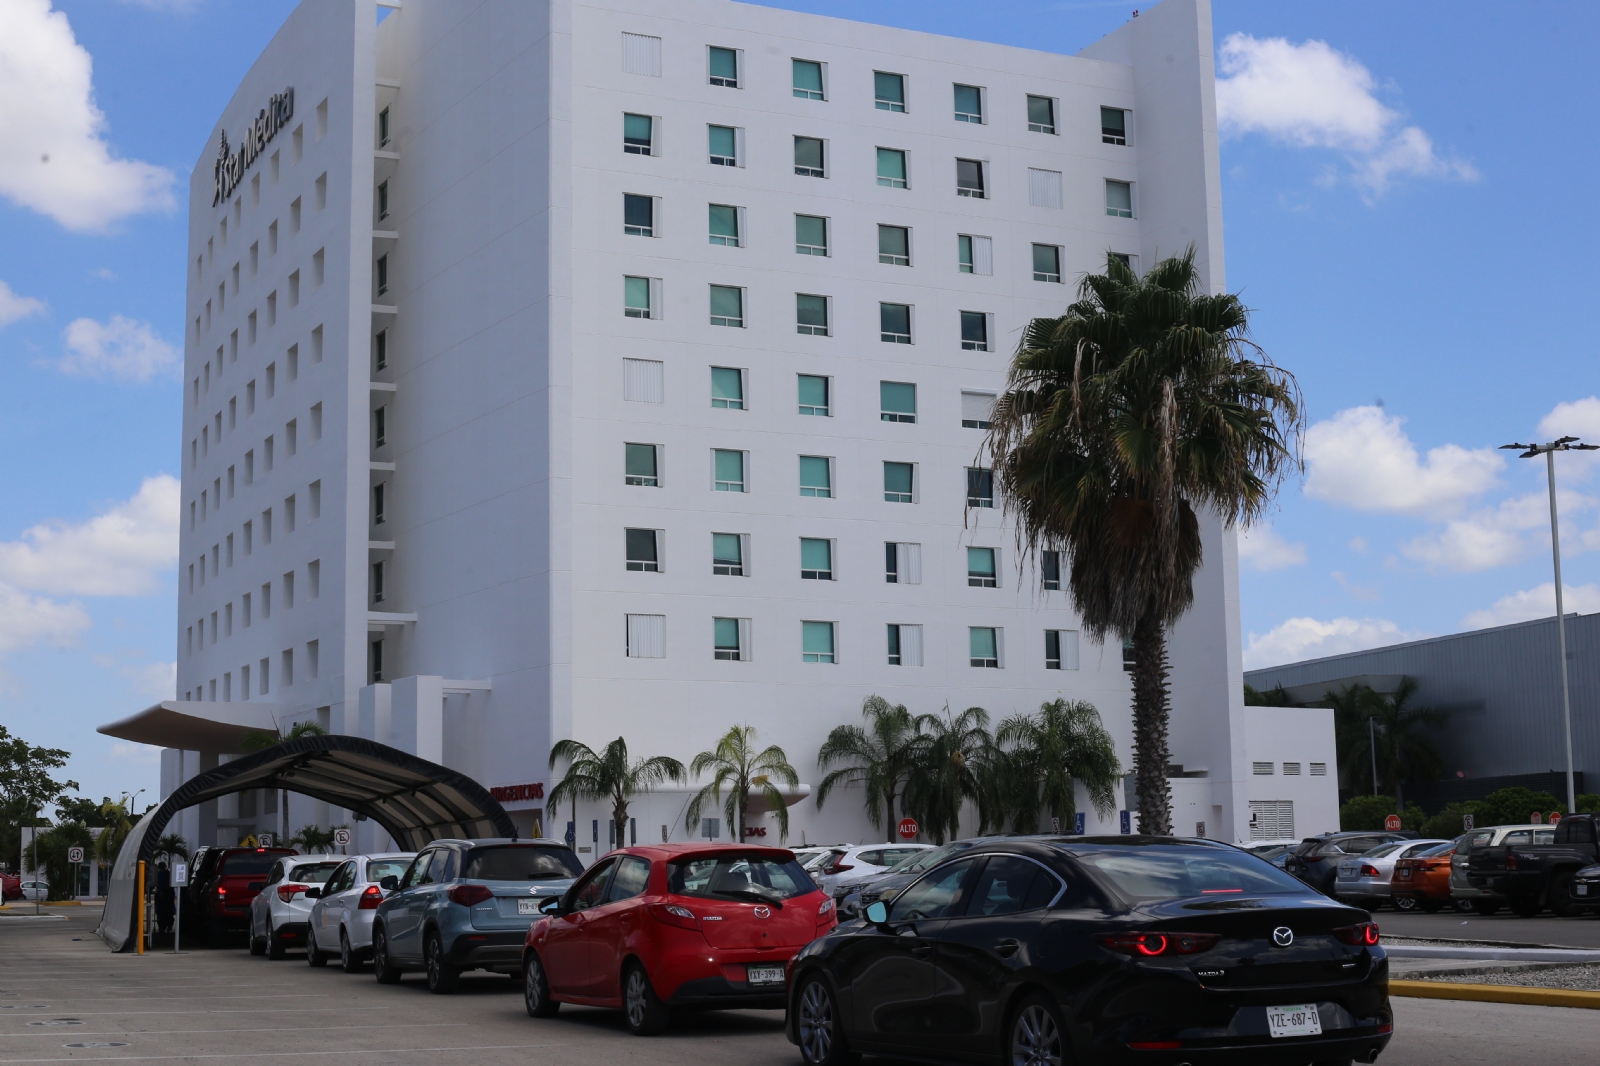 Aumentan las pruebas rápidas de COVID-19 en hospitales privados de Mérida